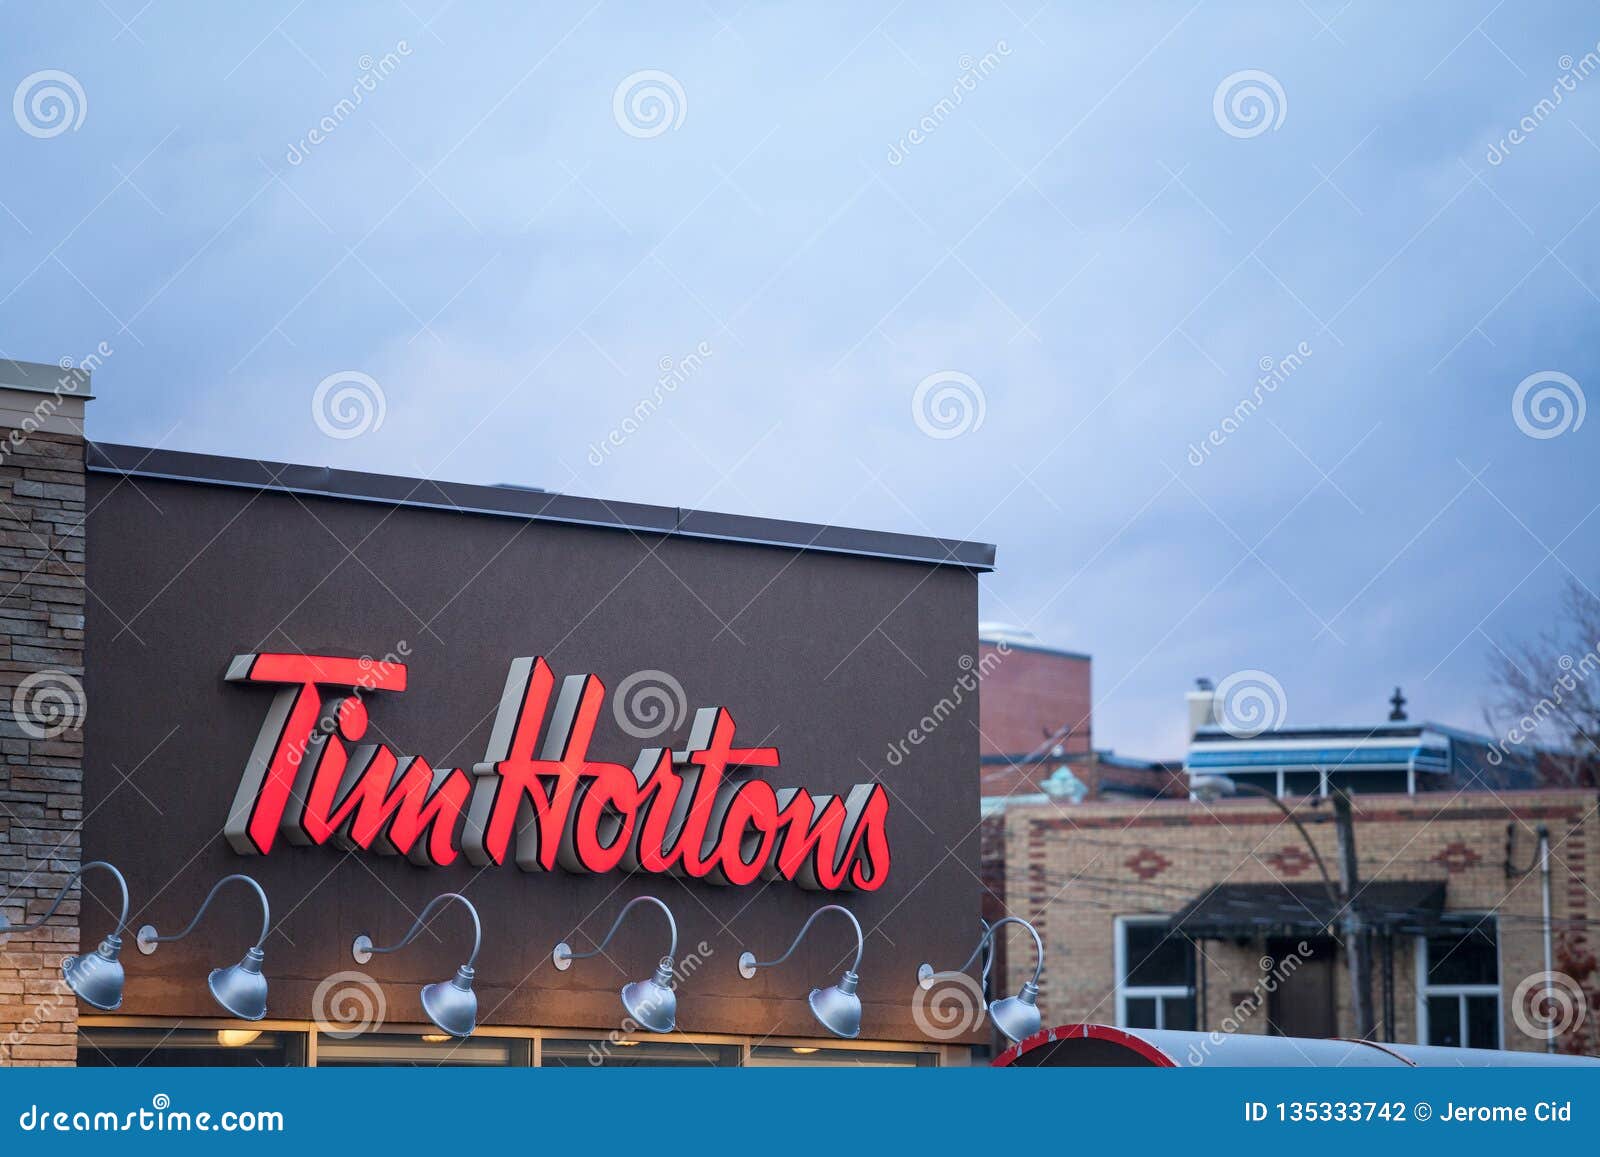 Tim Hortons Logo Framme Av En Av Deras Restauranger I Montreal Quebec